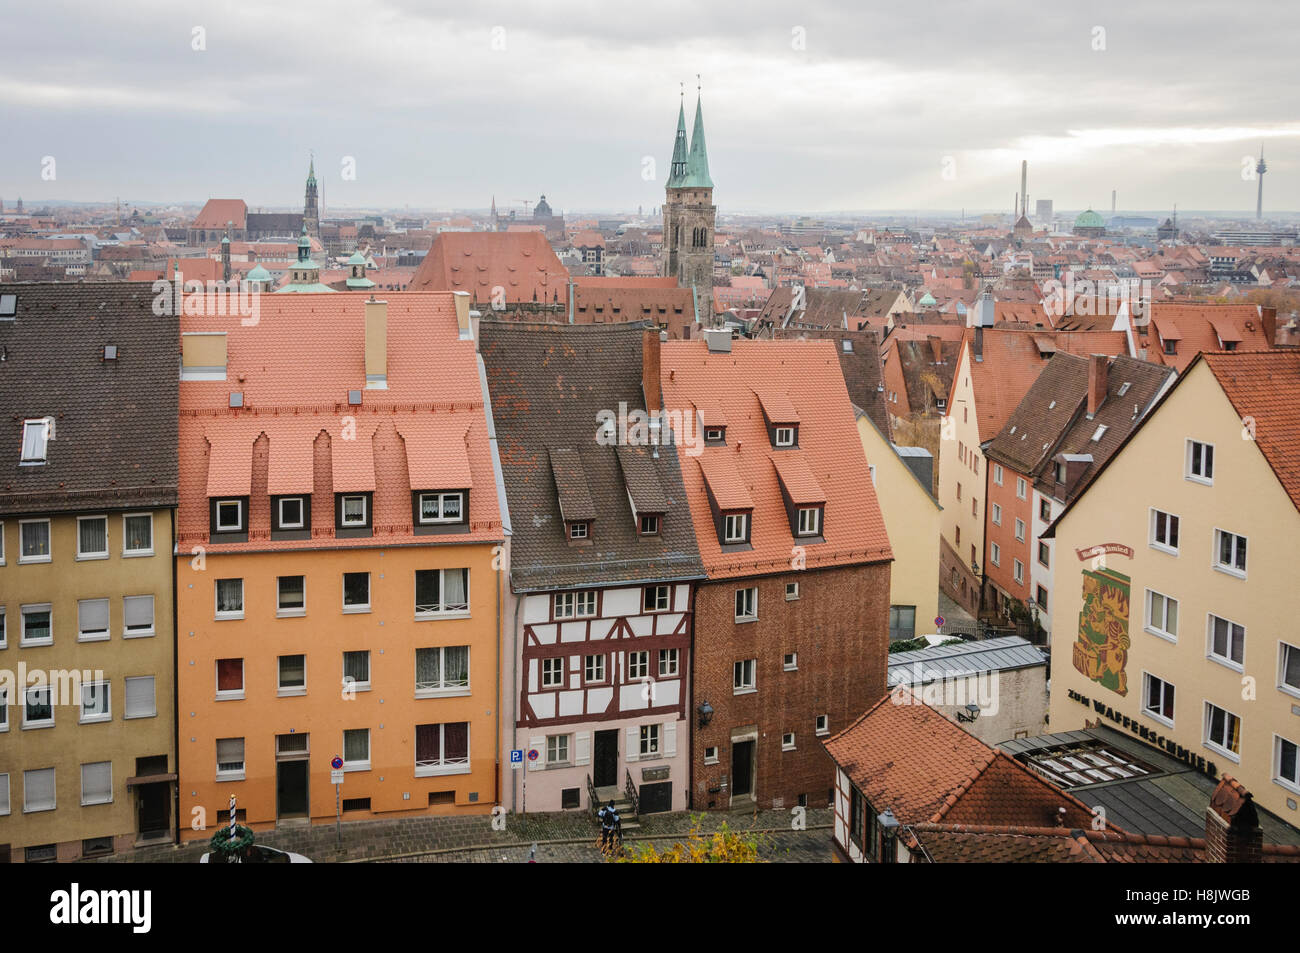 Eine Reihe von mehrstöckigen Stadt Häuser sitzen eng zusammen verpackt in der Stadt Nürnberg, Deutschland. Die Häuser sind sehr gepflegt ein Stockfoto